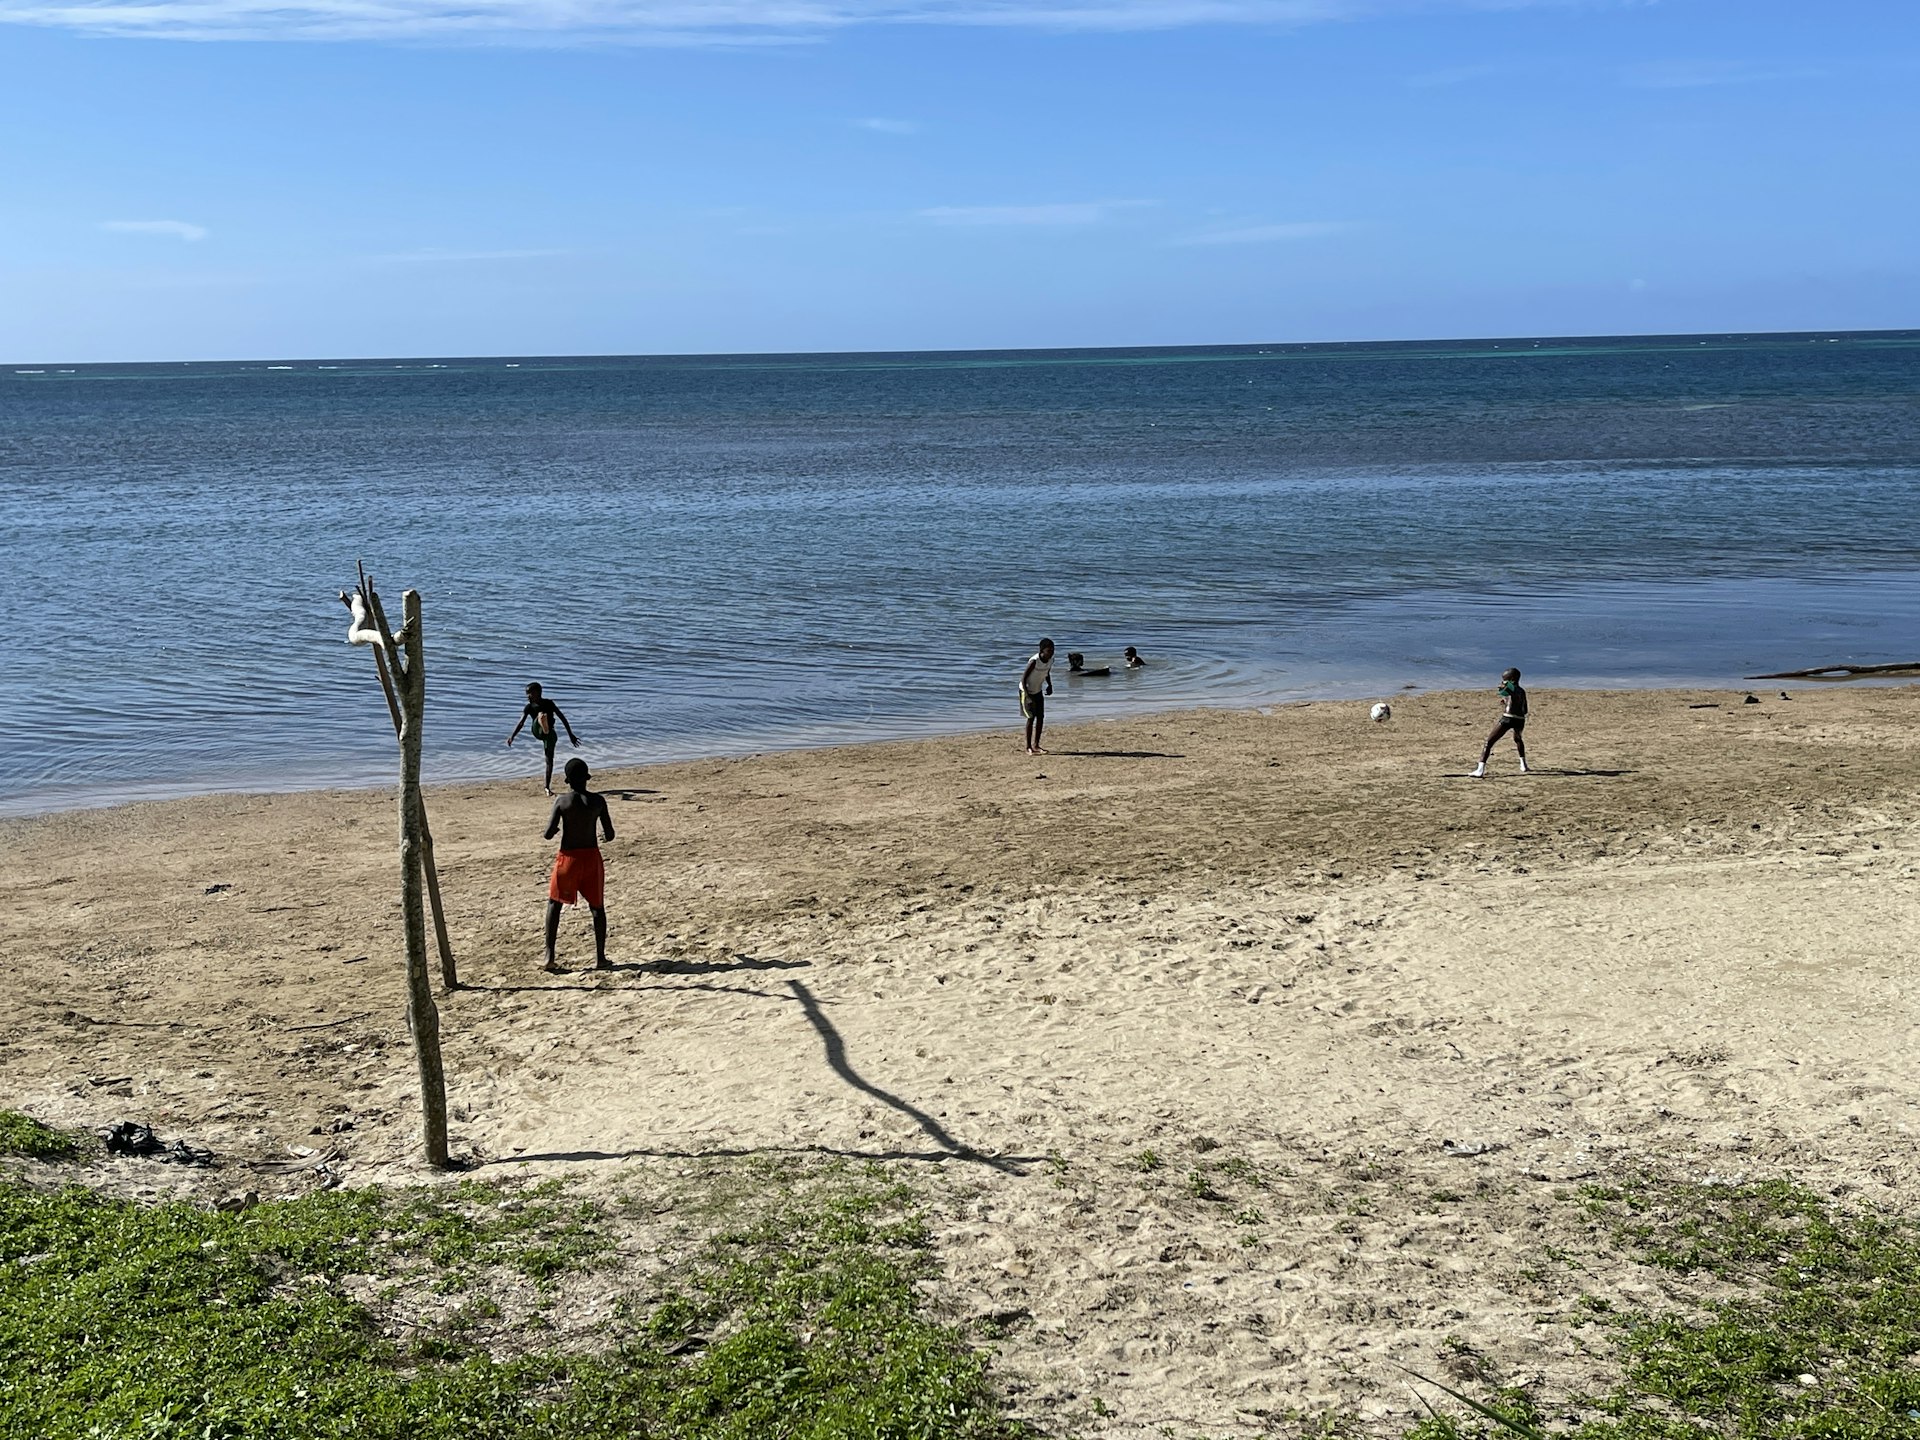 A soccer game on the beach of Roatán